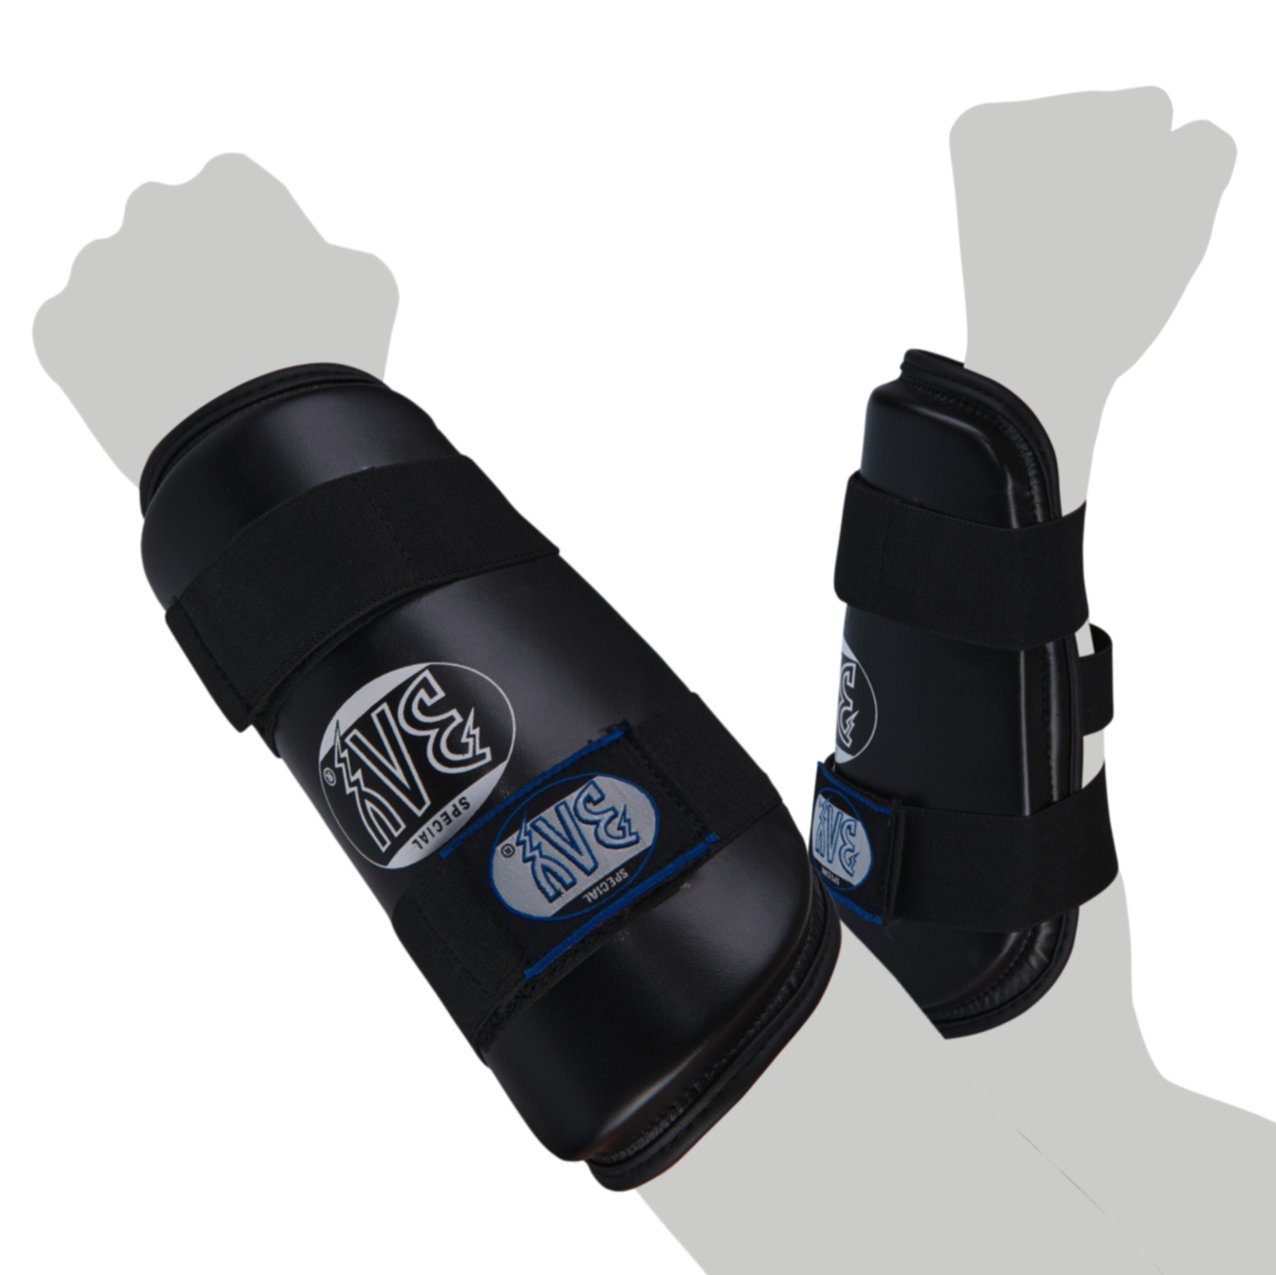 BAY-Sports Armschoner Unterarmschutz Unterarmschoner Kampfsport Krav Maga Unterarm, Für Vollkontakt geeignet, feucht abwischbar, Kunstleder, XS - XL